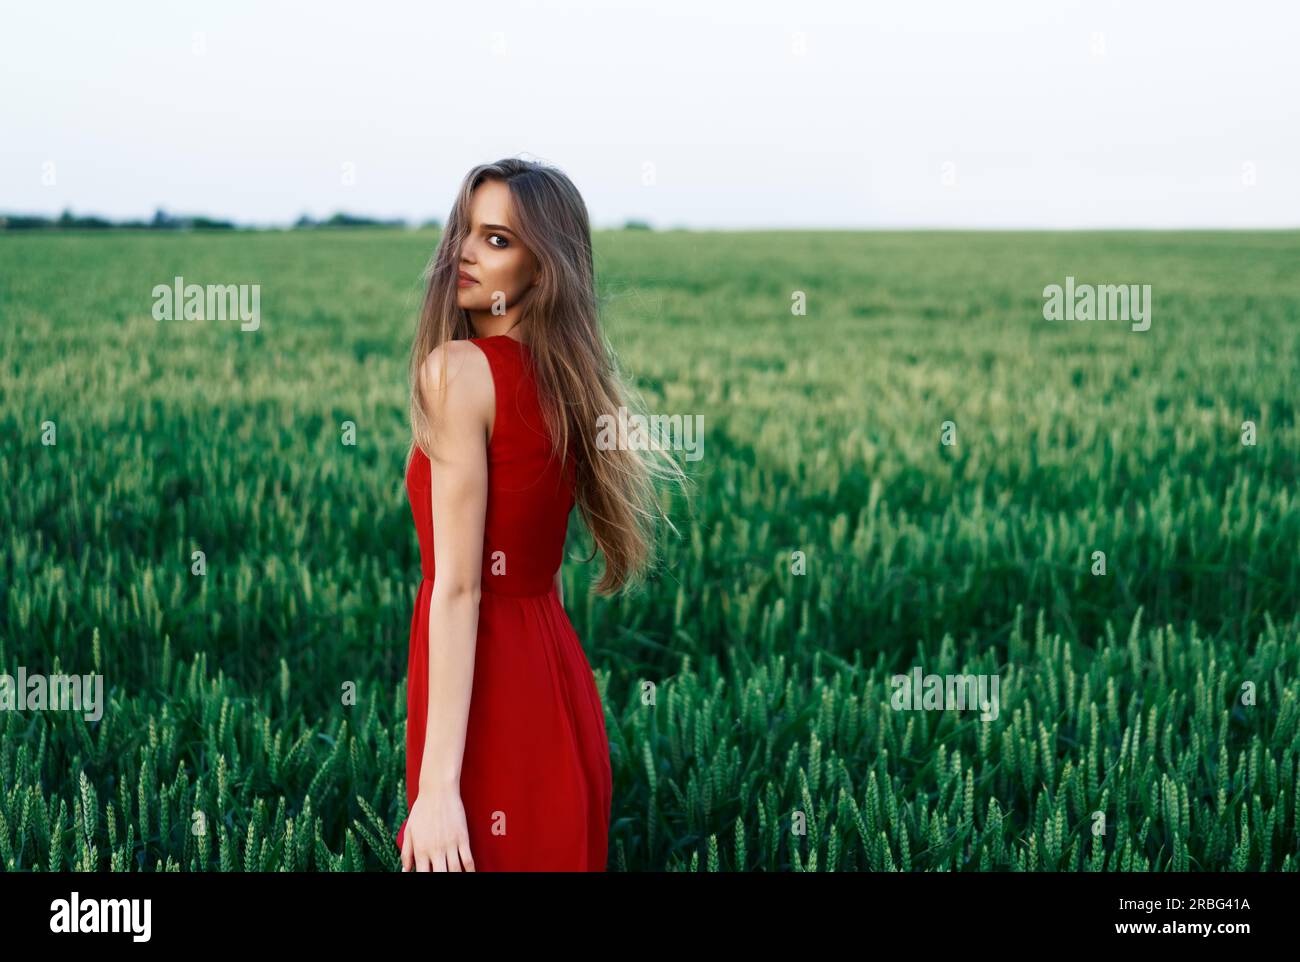 Schöne junge Frau im roten Kleid im Freien in grün sommer feld posieren. Mode, Beauty Konzept Stockfoto